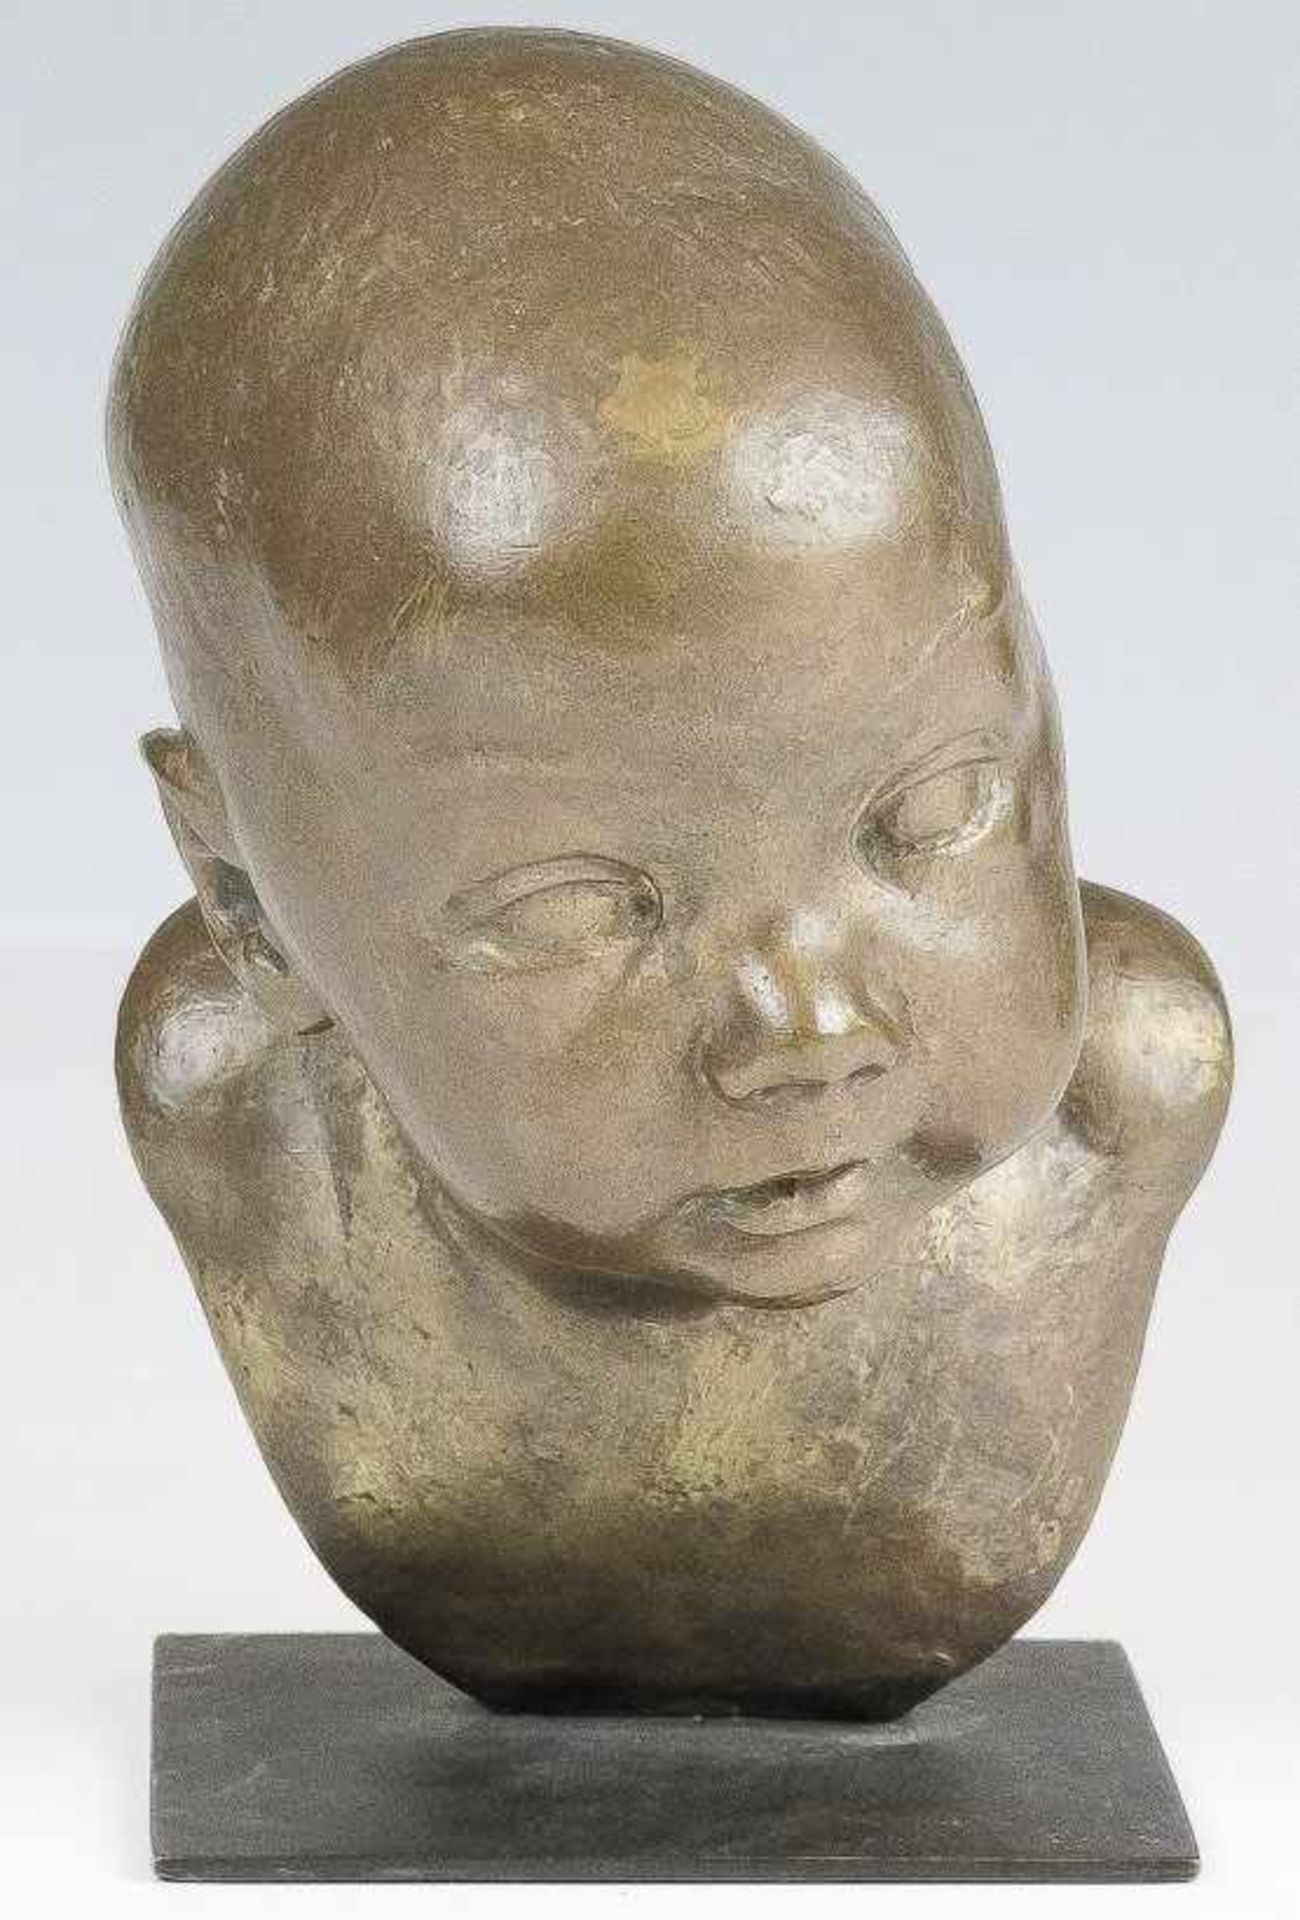 Unbekannter Bildhauer (20. Jh.) Kopf eines Kindes.Bronze, dunkel patiniert. Kupferplinthe. H. 22